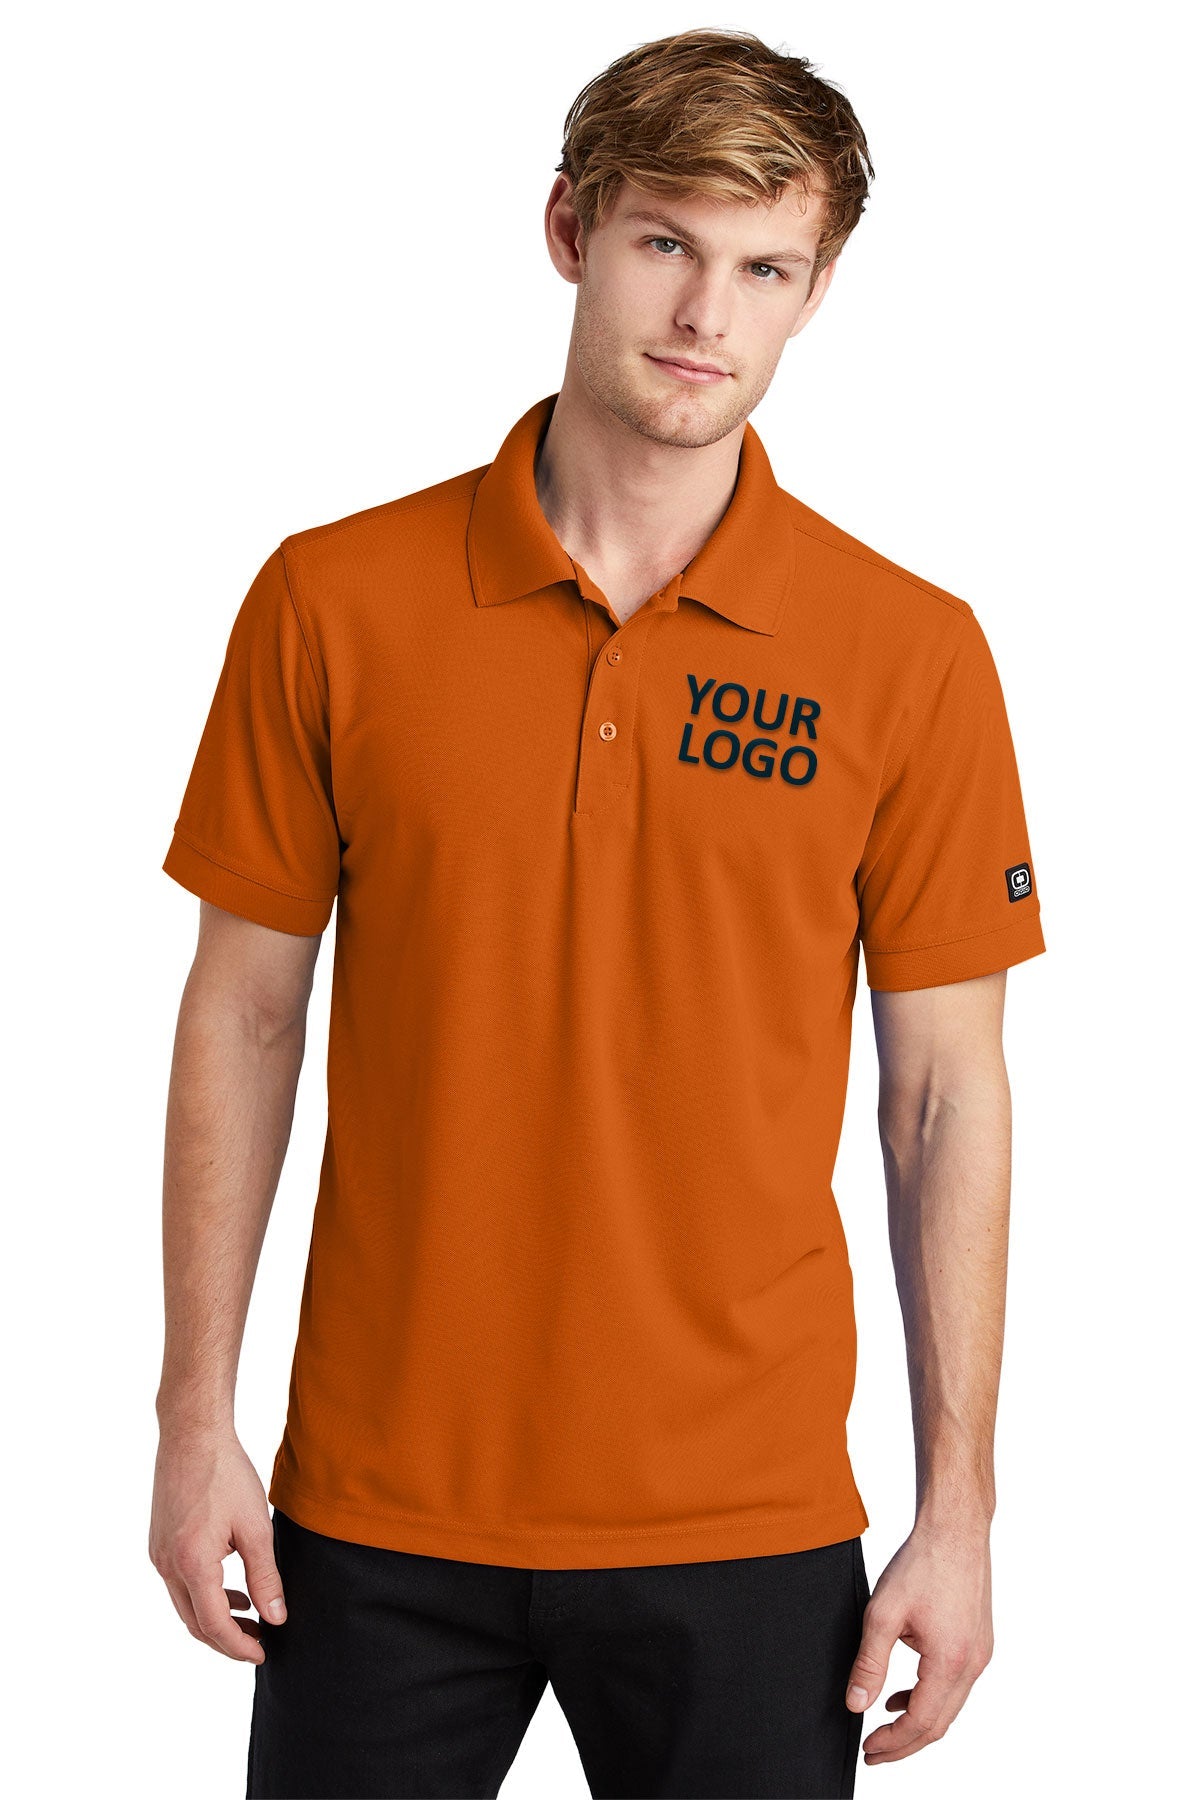 OGIO Flare Orange OG101 polo shirts with custom logo